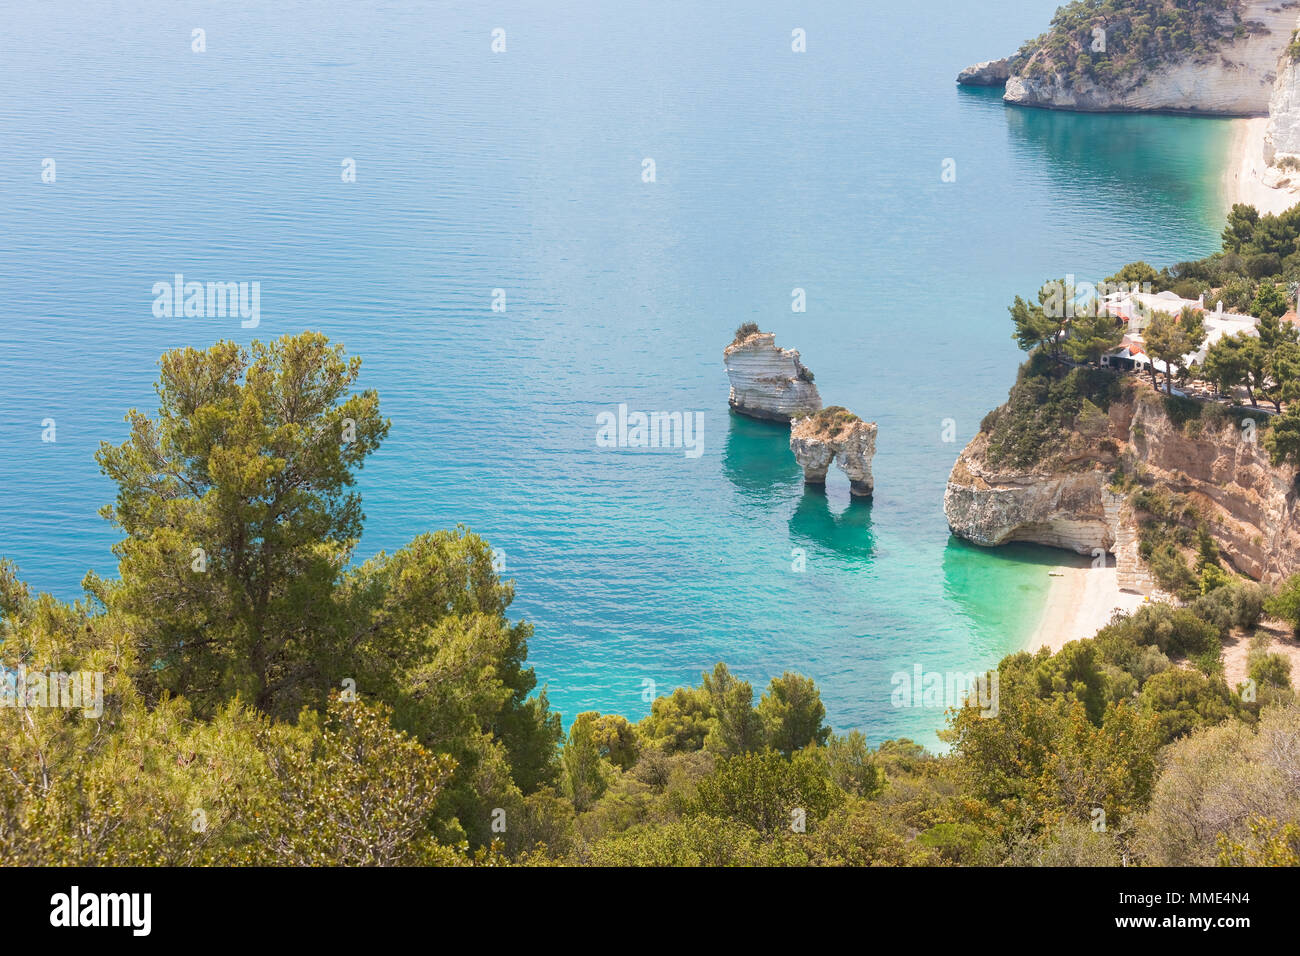 Grotta Smeralda, Apulien, Italien - mit Blick auf die Grotte von Smeralda aus der Sicht Stockfoto